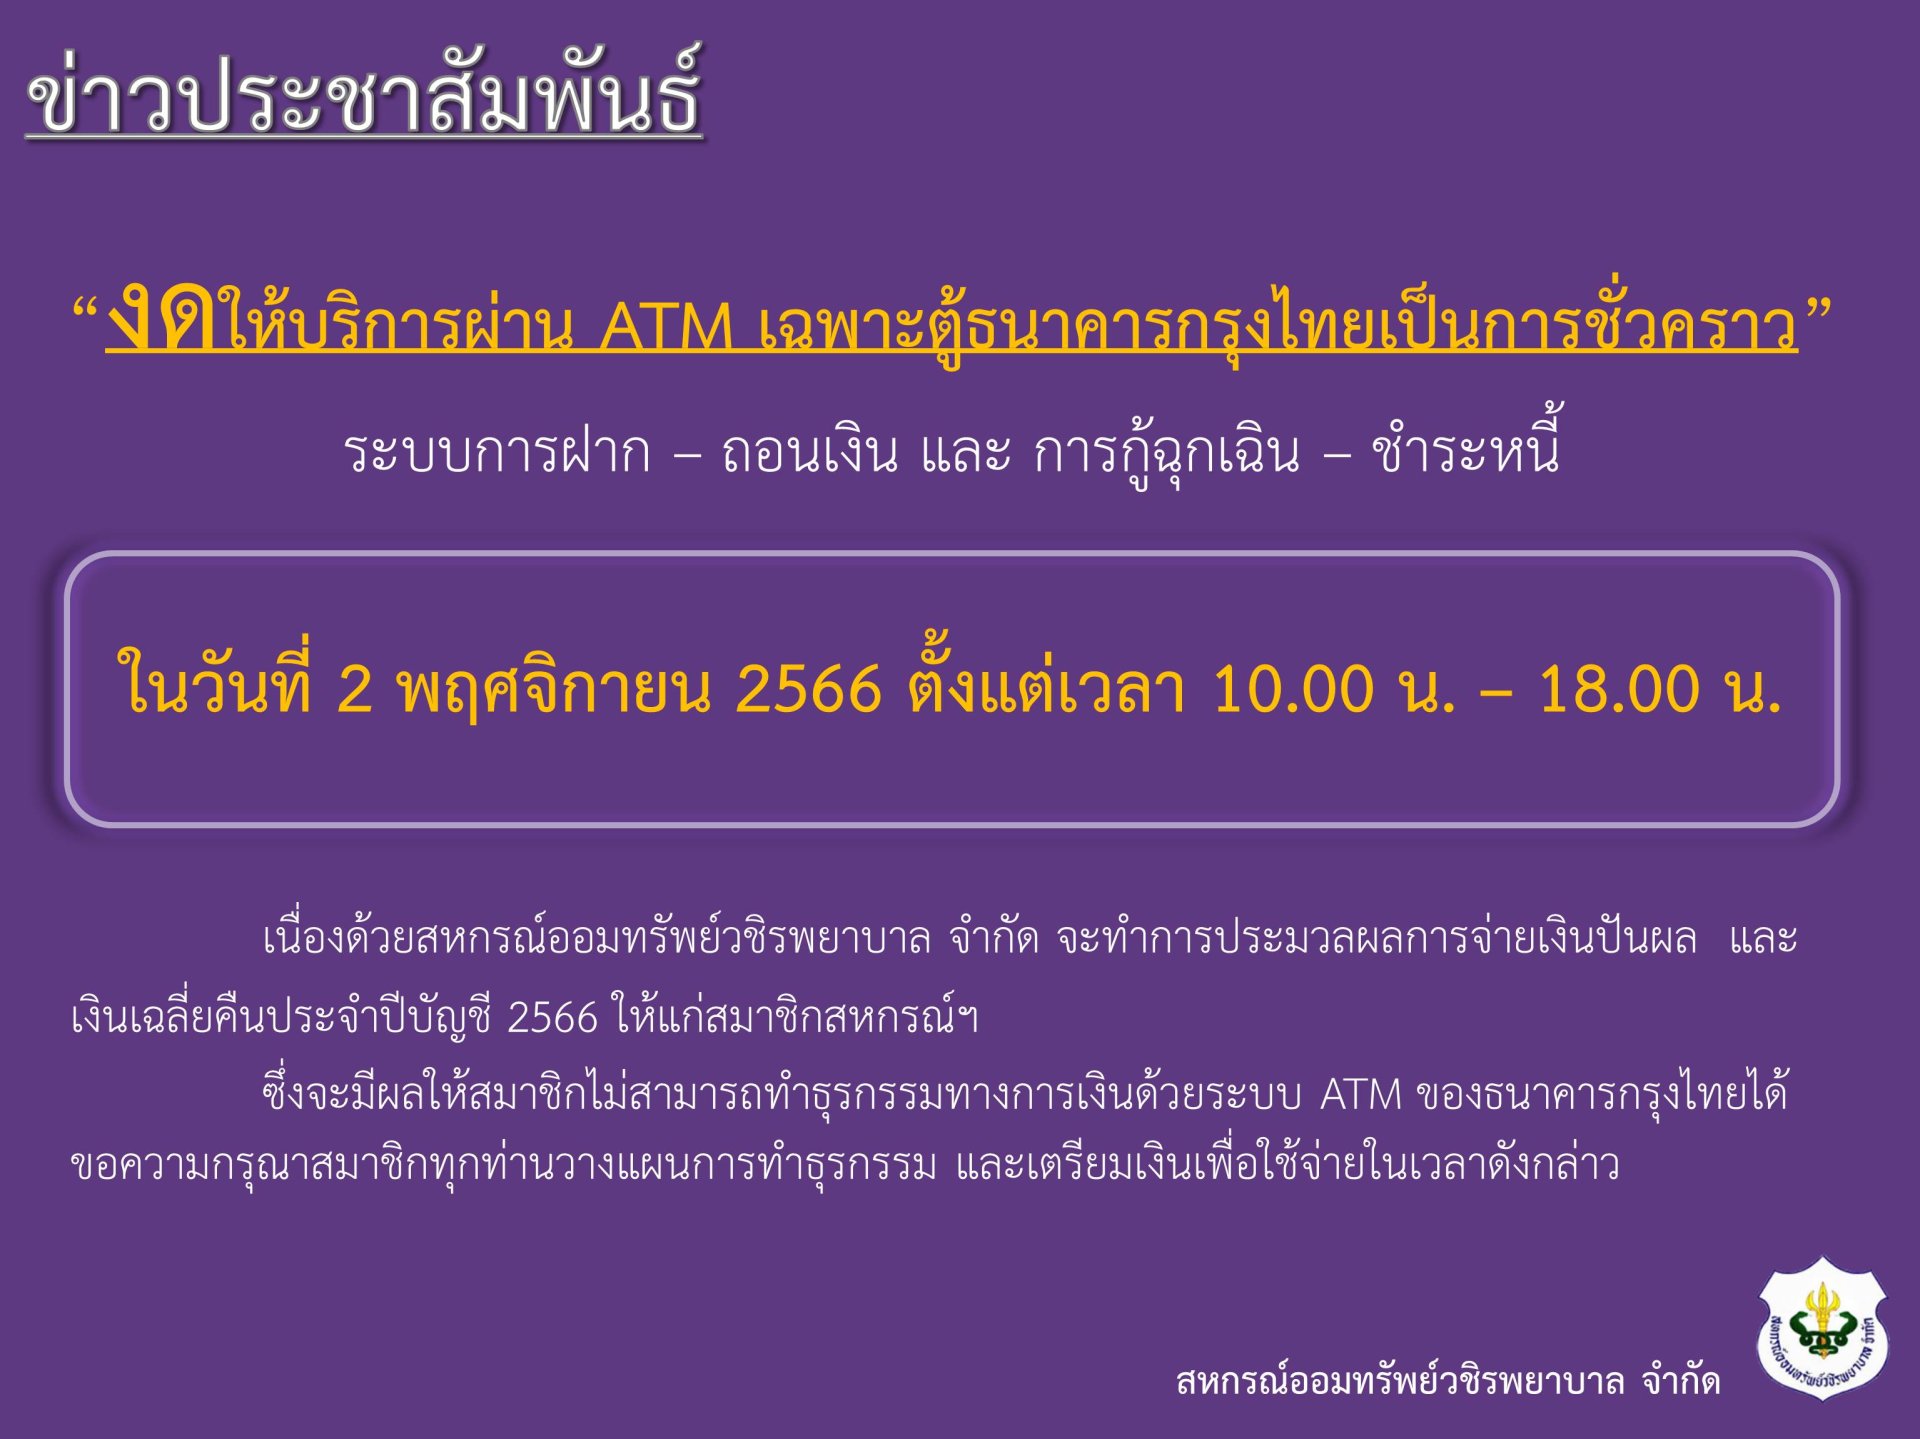 ขอแจ้งงดให้บริการระบบ ATM ในวันประชุมใหญ่สามัญประจำปีบัญชี 2566